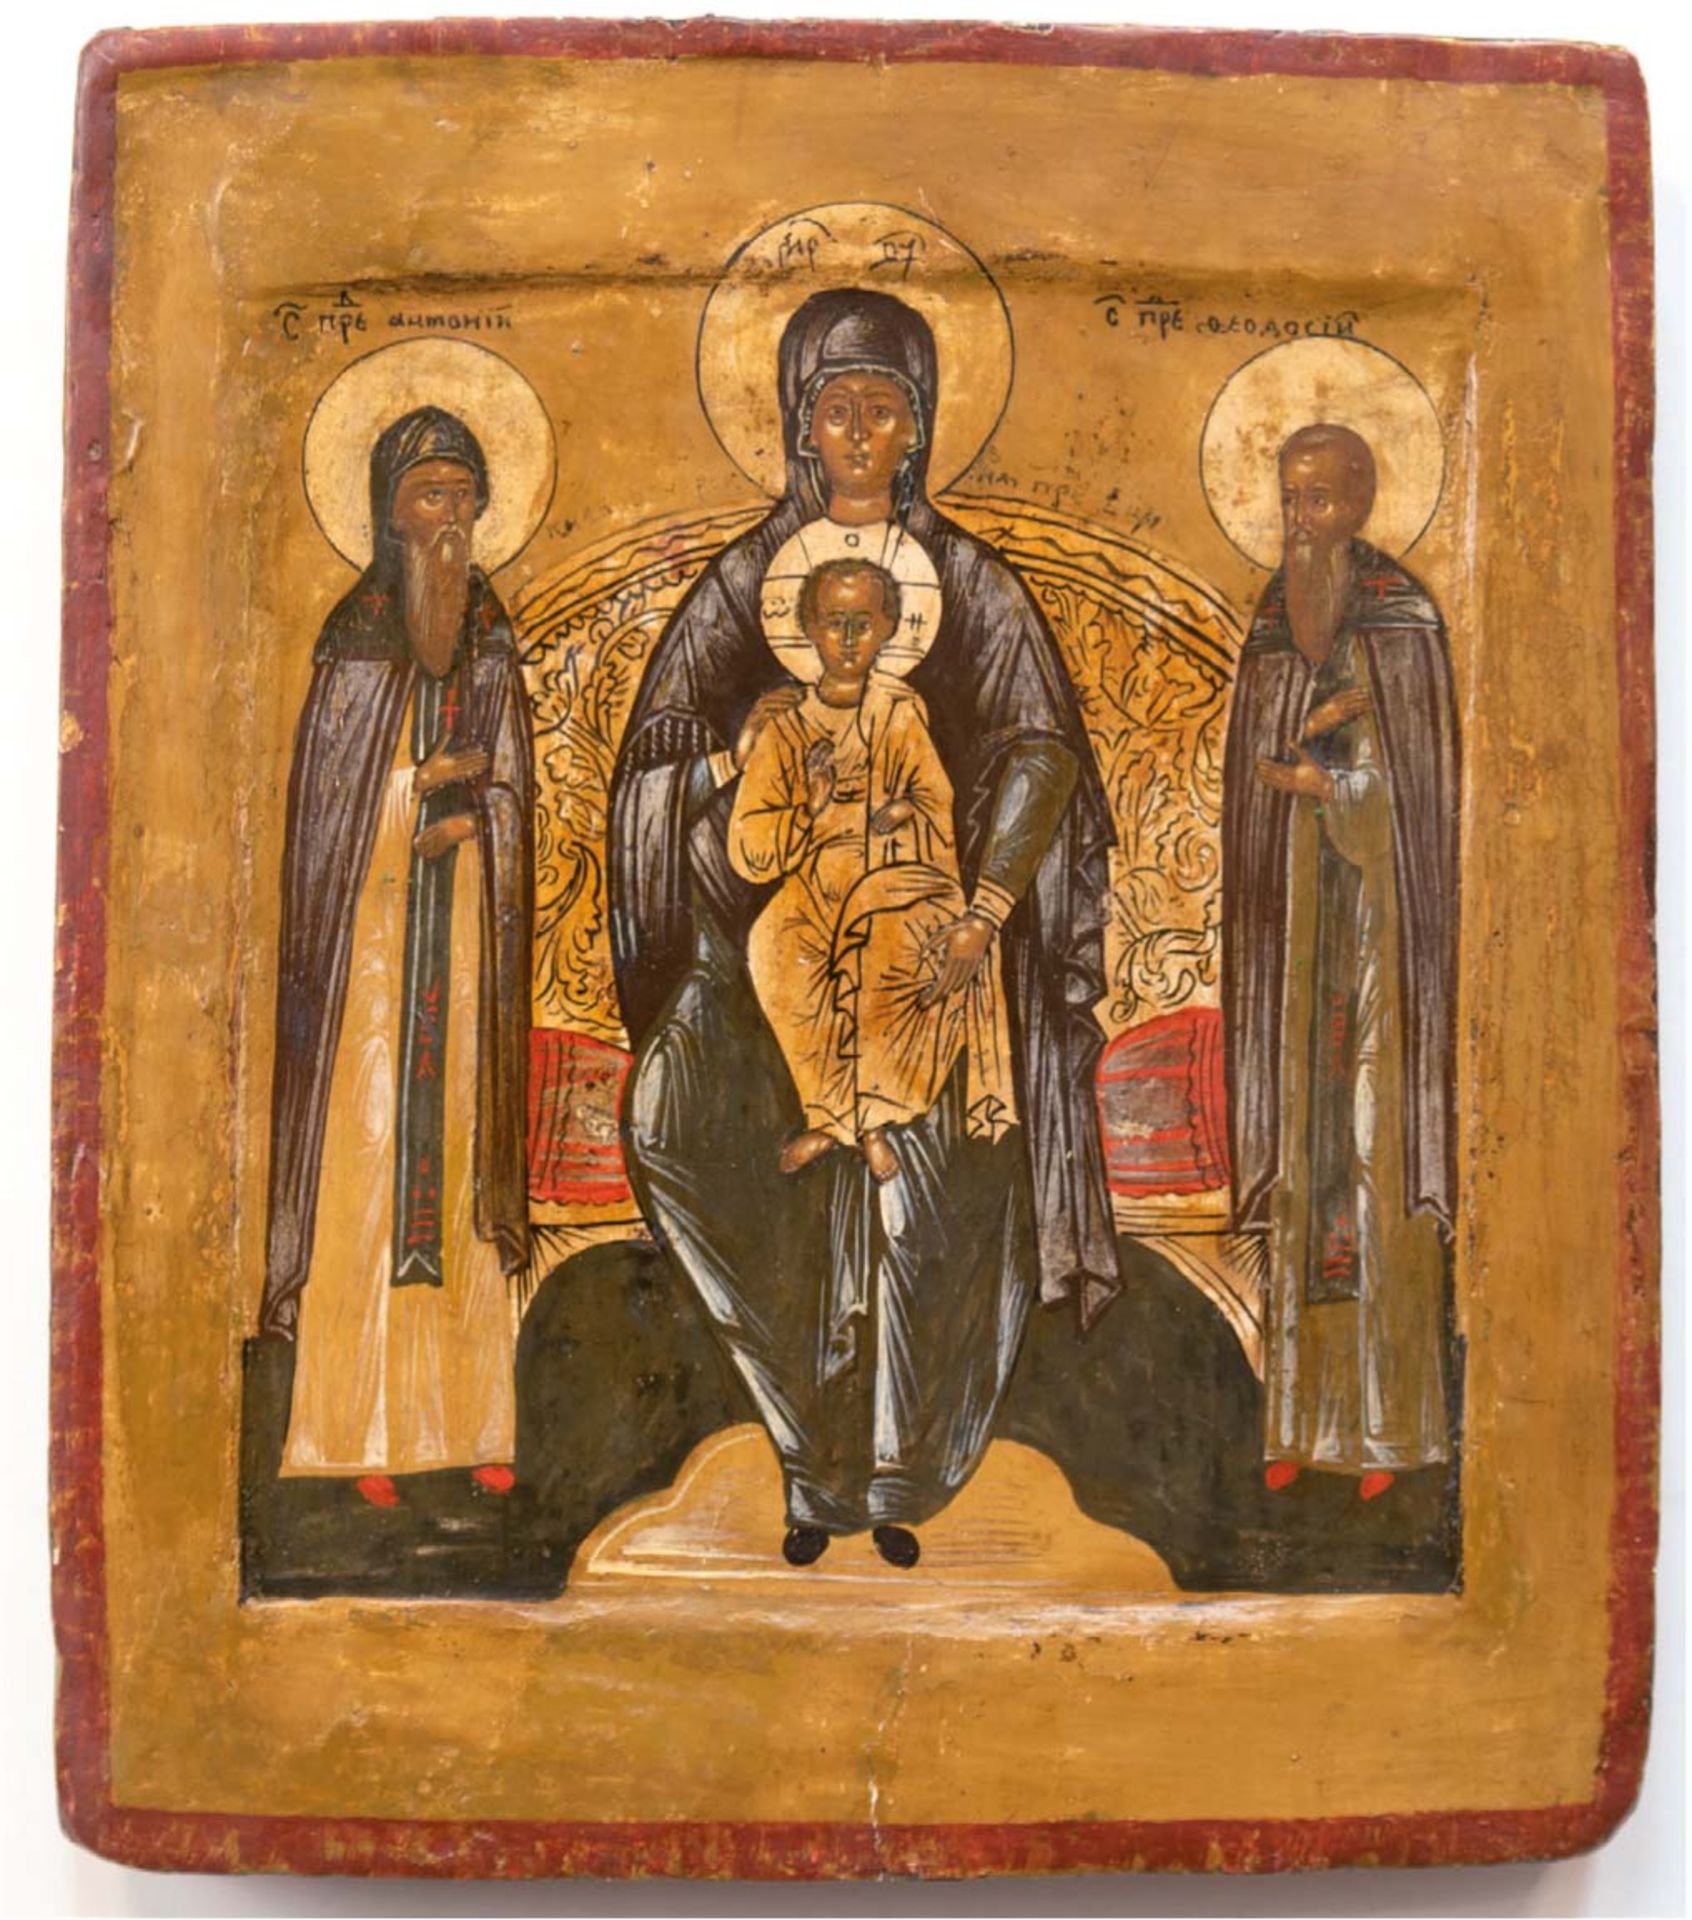 Ikone "Gottesmutter von Kiew", mit 2 Mönchsheiligen Anthonij und Feodosij, Anf. 18. Jh., Eitempra/